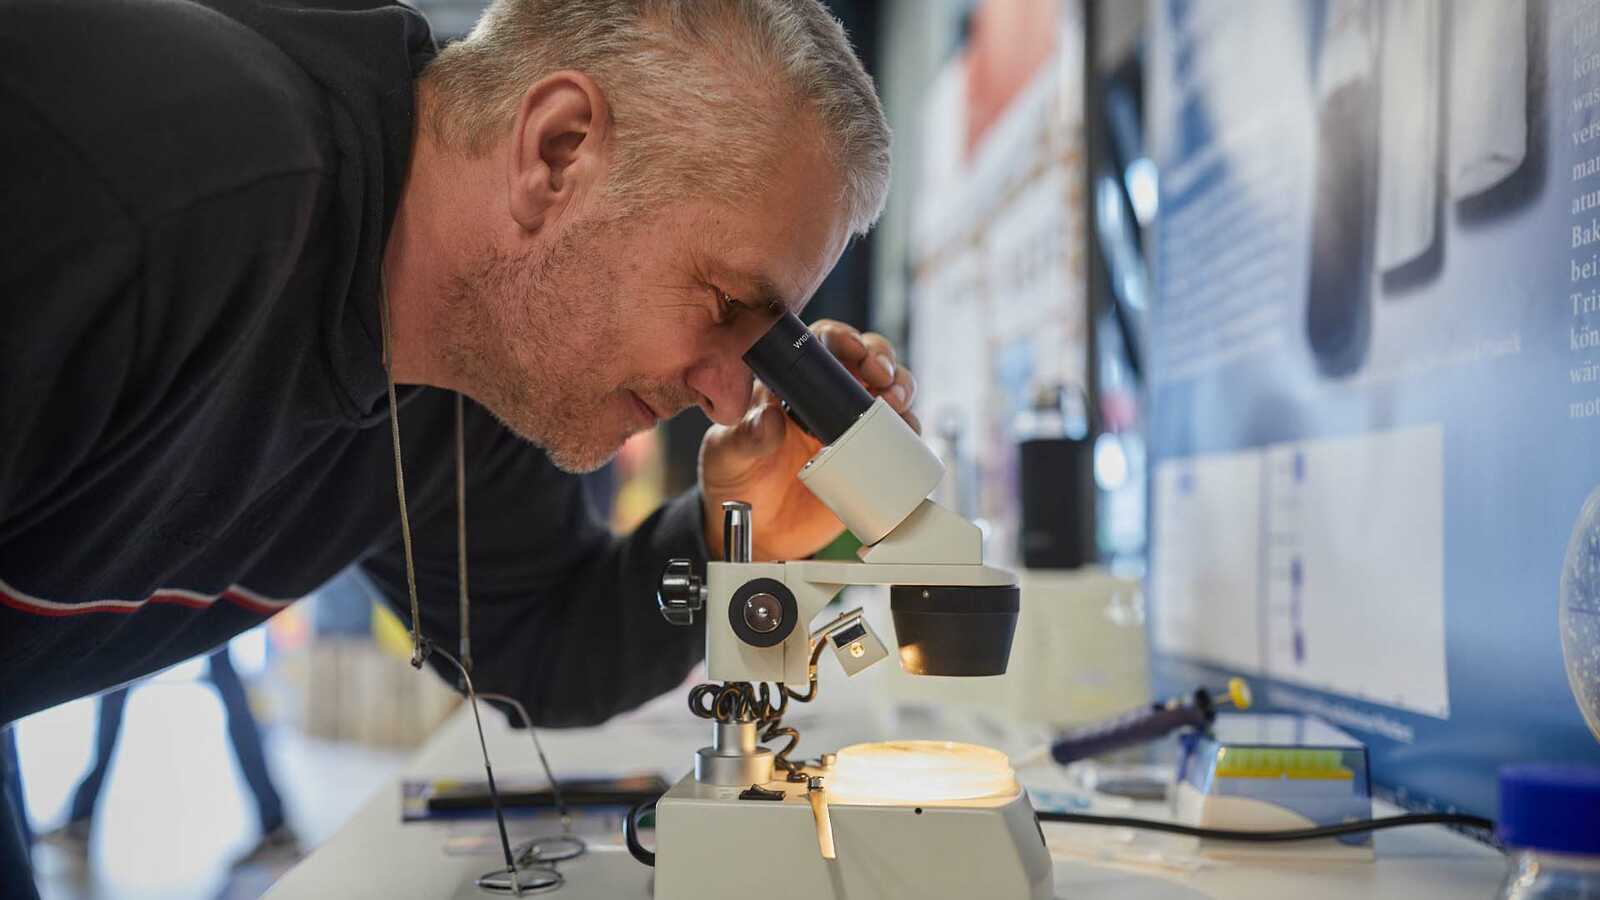 Mann mit Bart schaut in ein Mikroskop